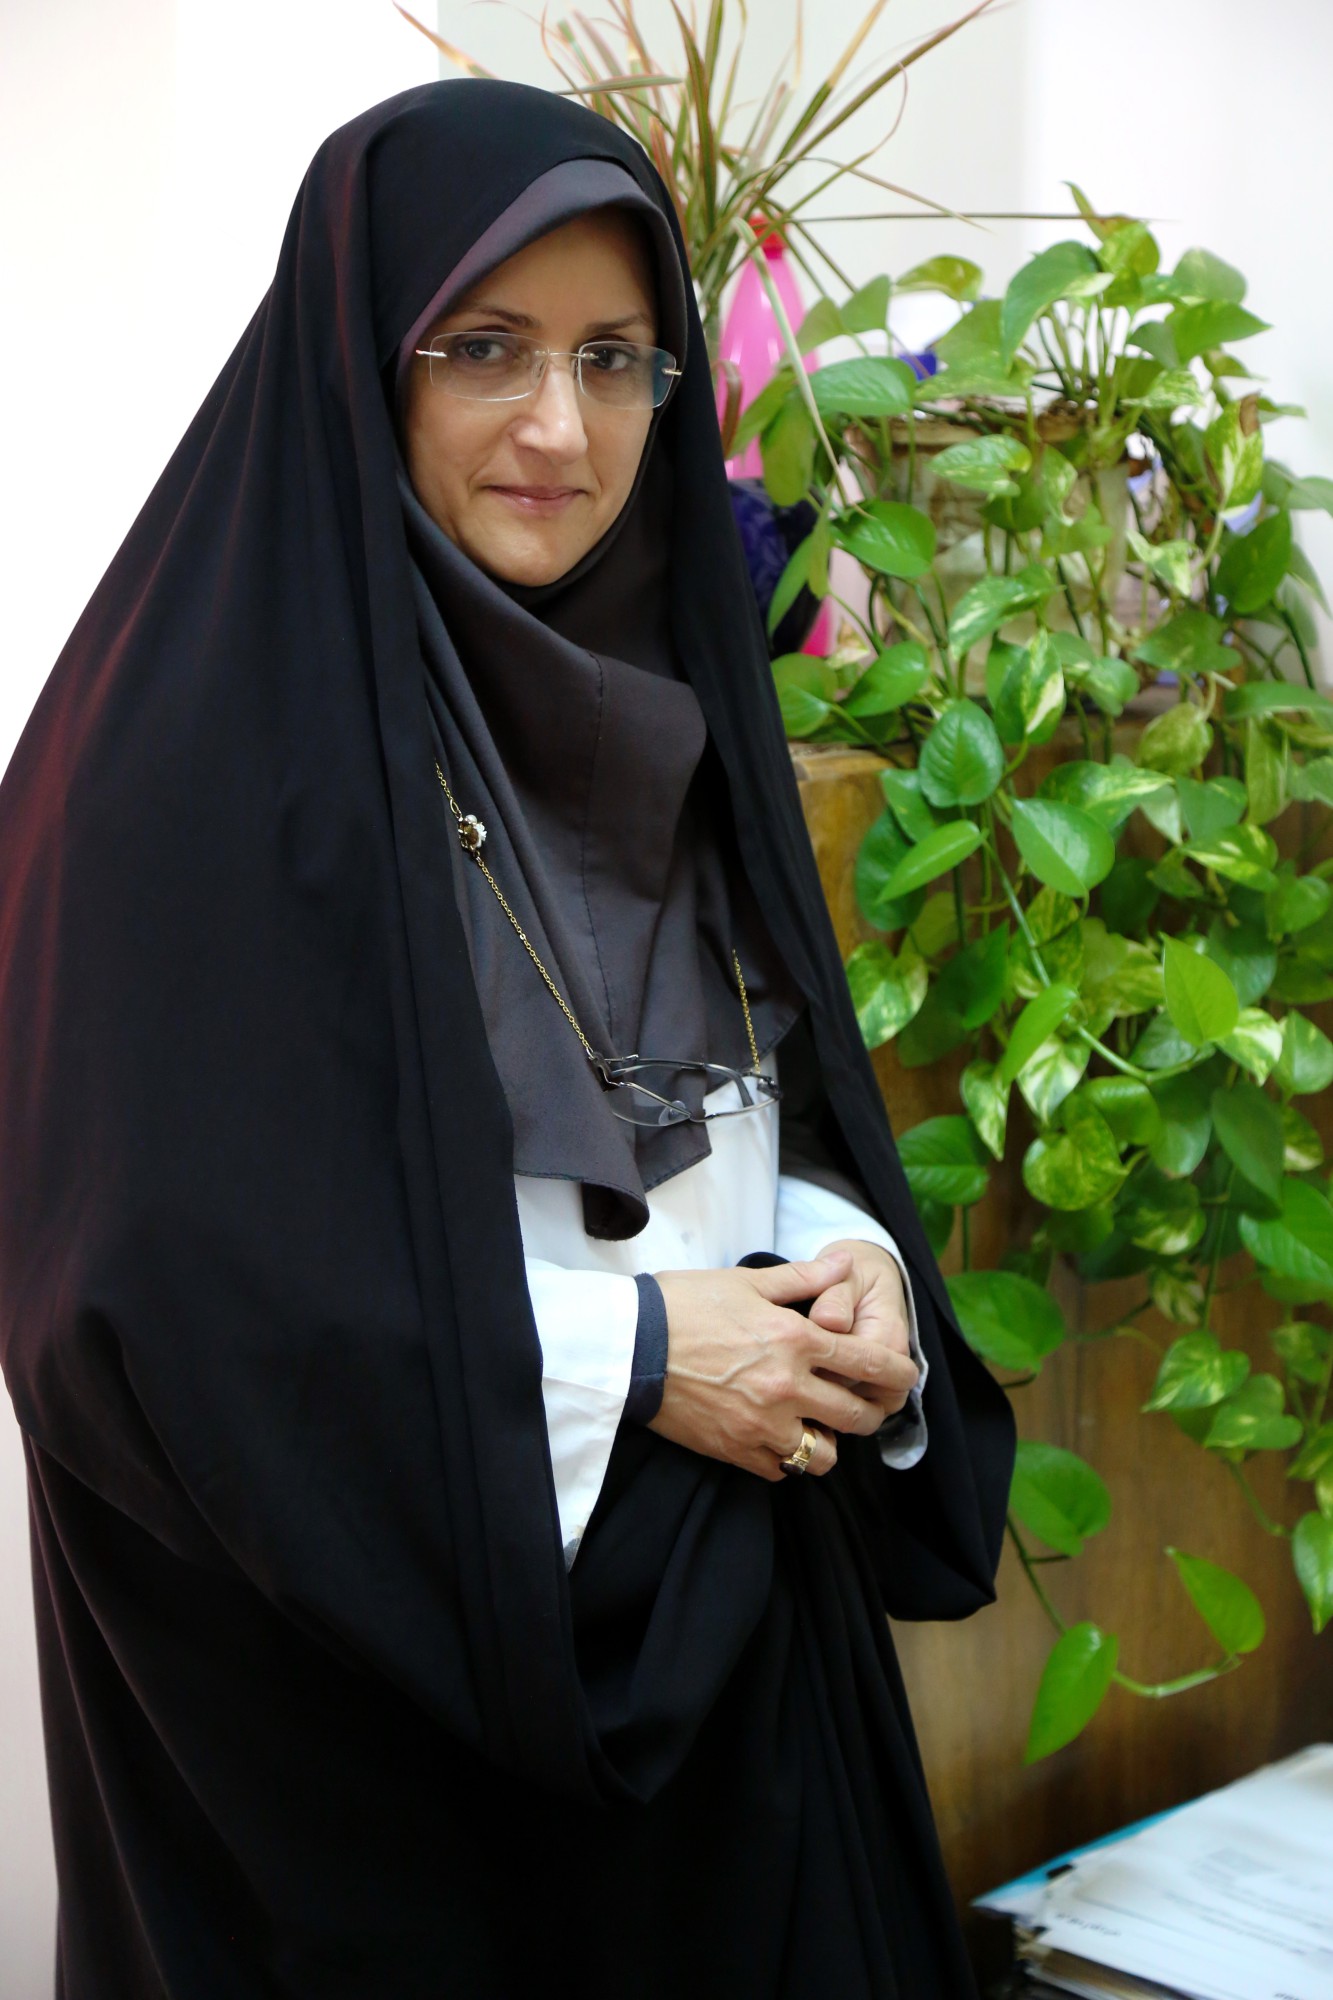 انجمن علمی رنگ ایران - تبریک به سرکار خانم مهندس سماعی یکتا